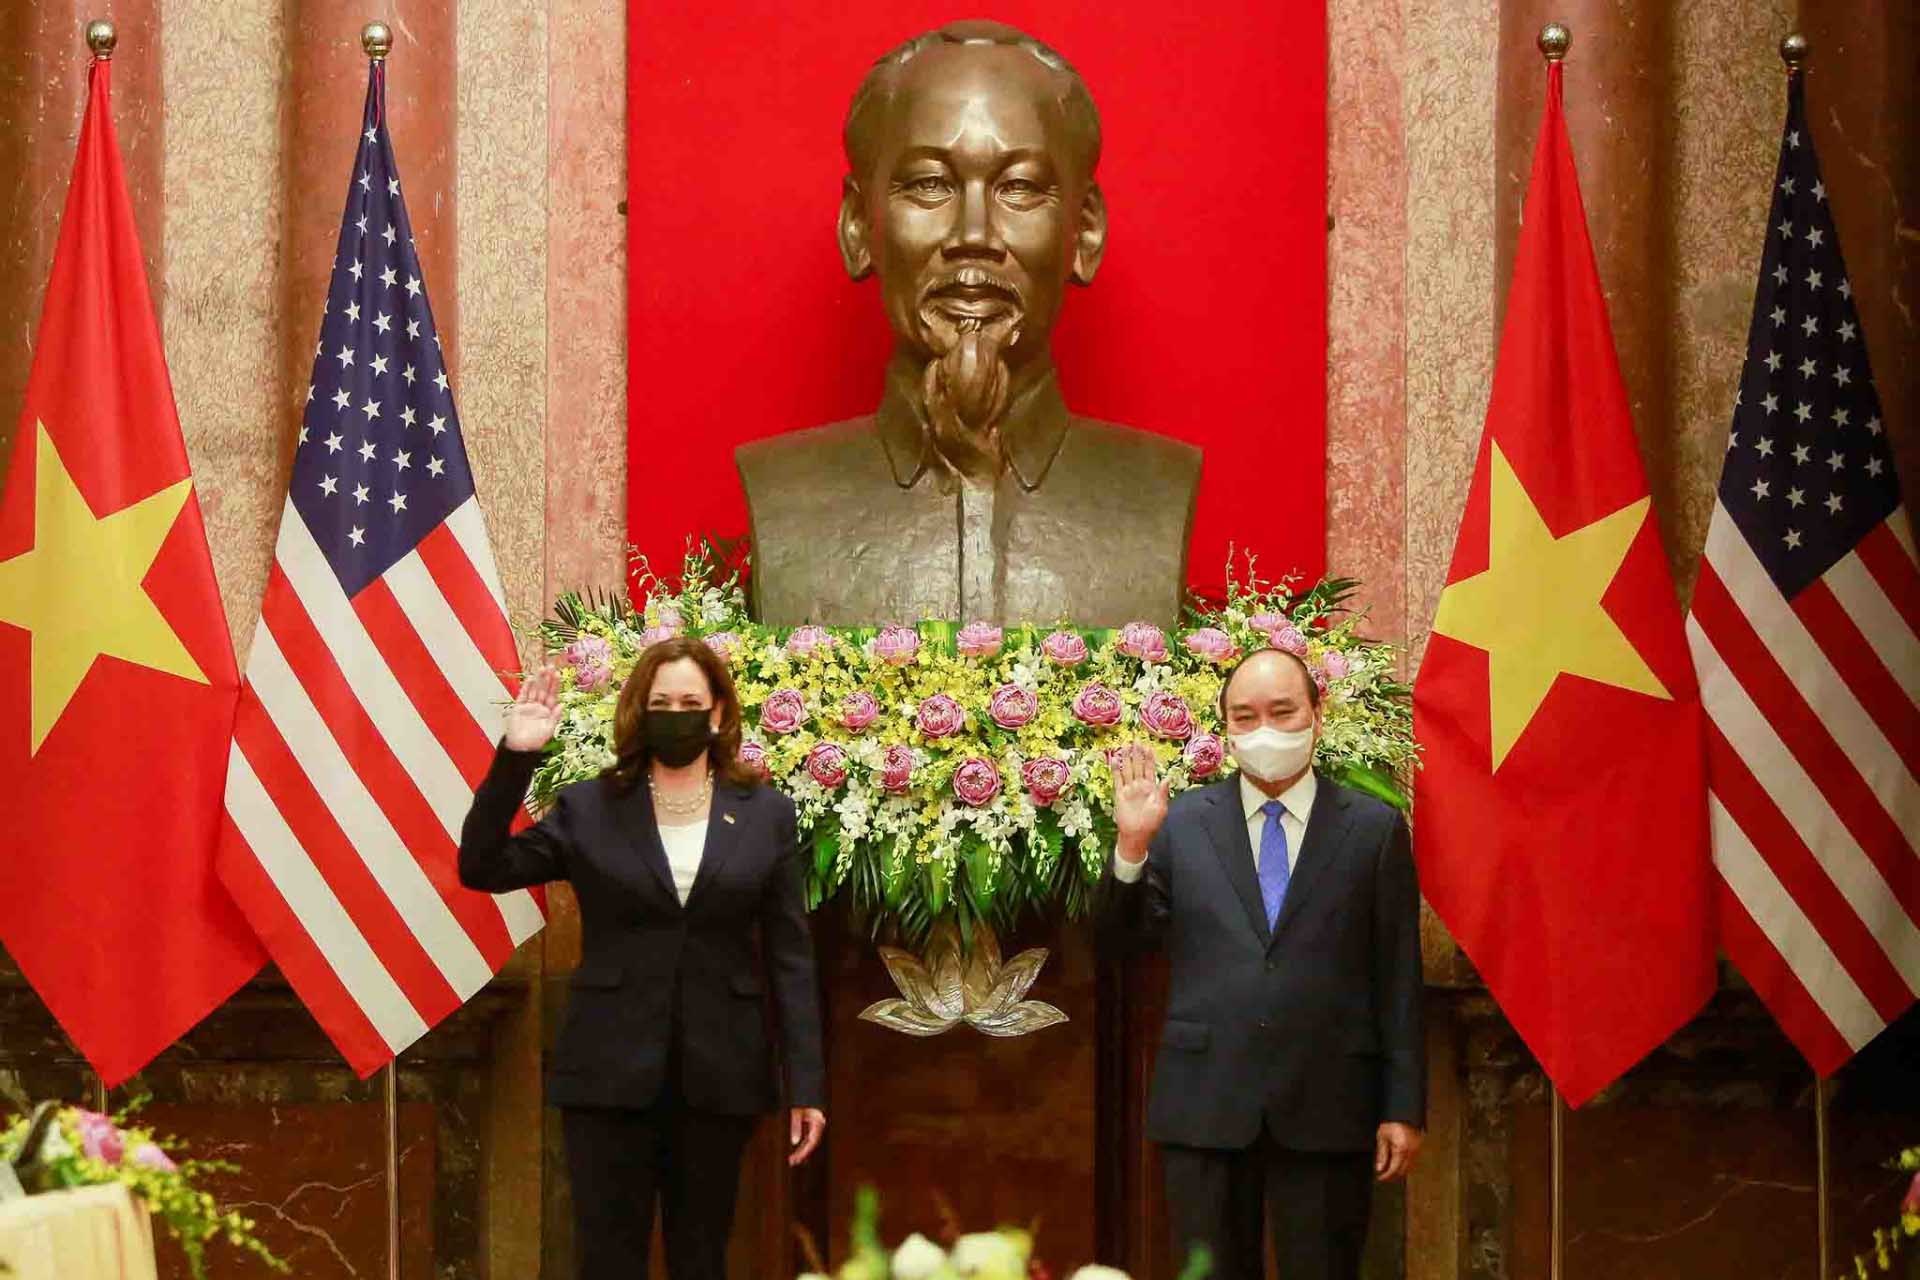 Tổng Bí thư và Chủ tịch nước mời Tổng thống Joe Biden thăm Việt Nam